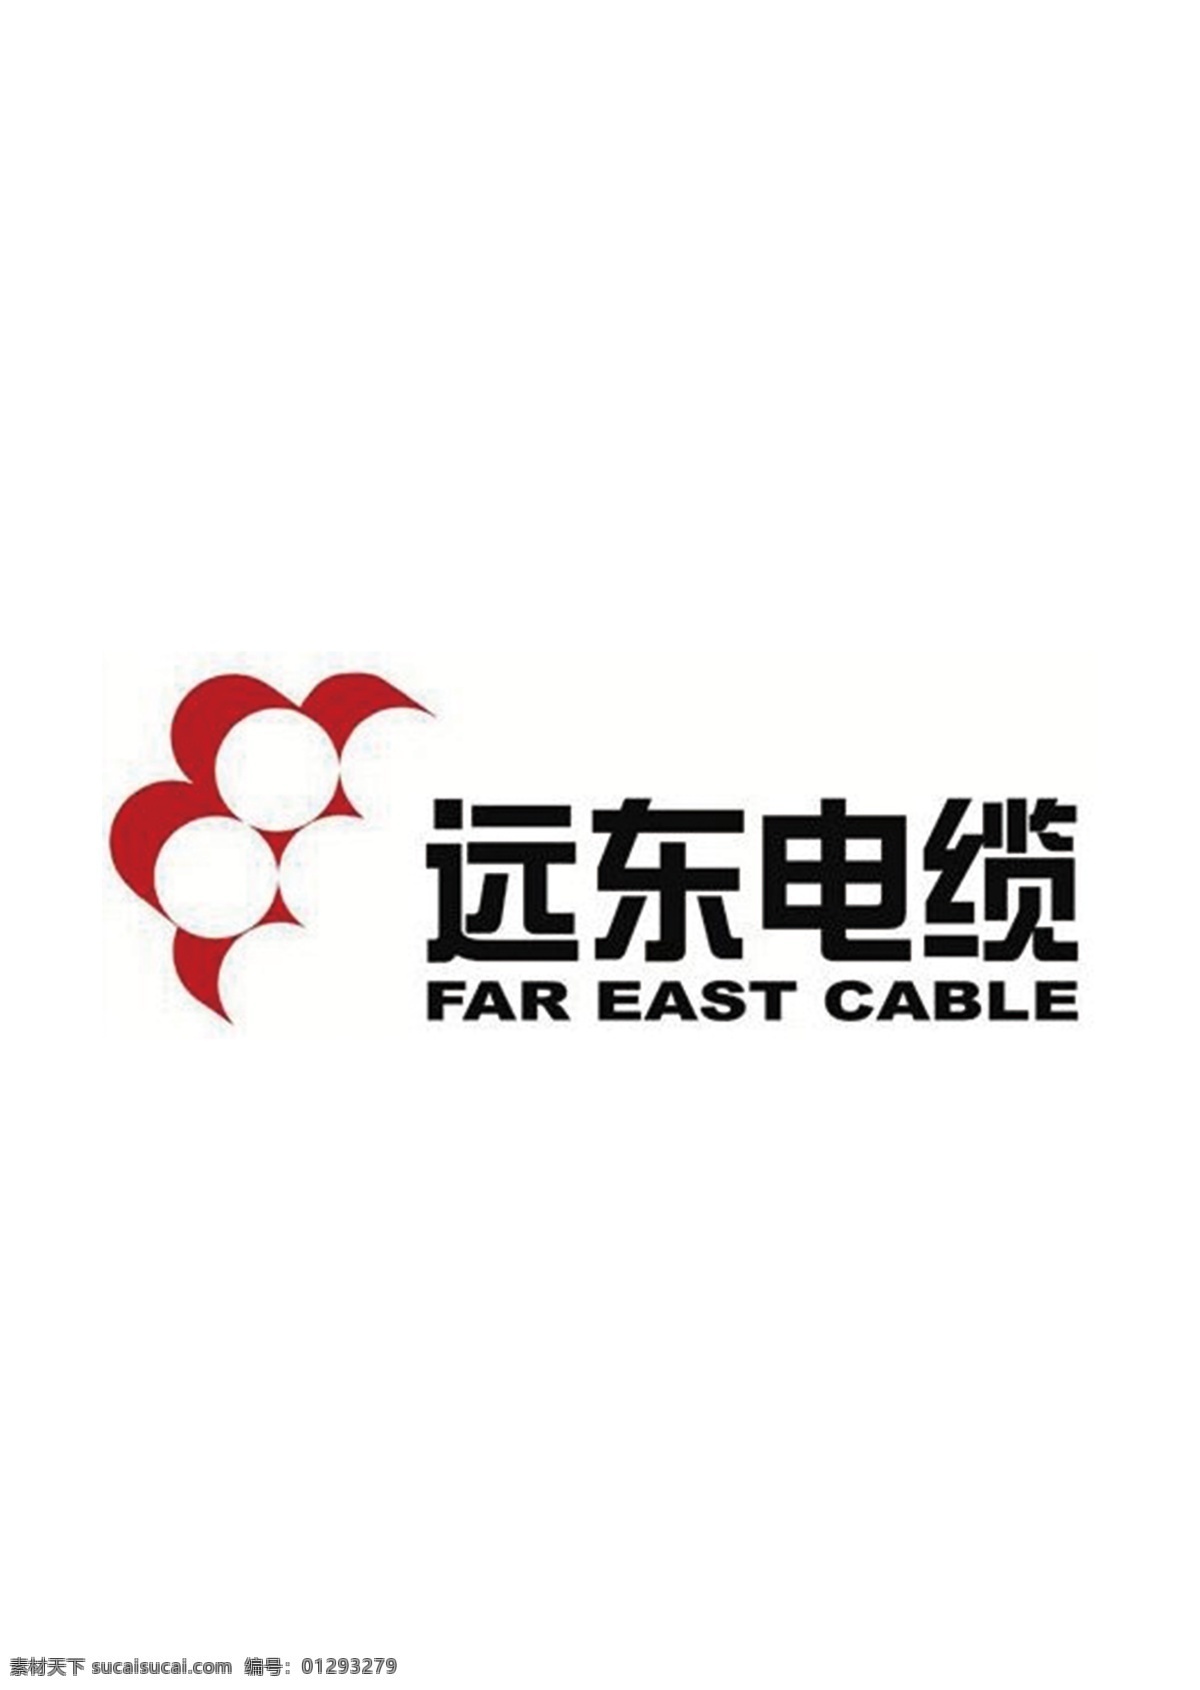 远东电缆图片 logo 装修logo 装饰logo 装修公司 装饰材料